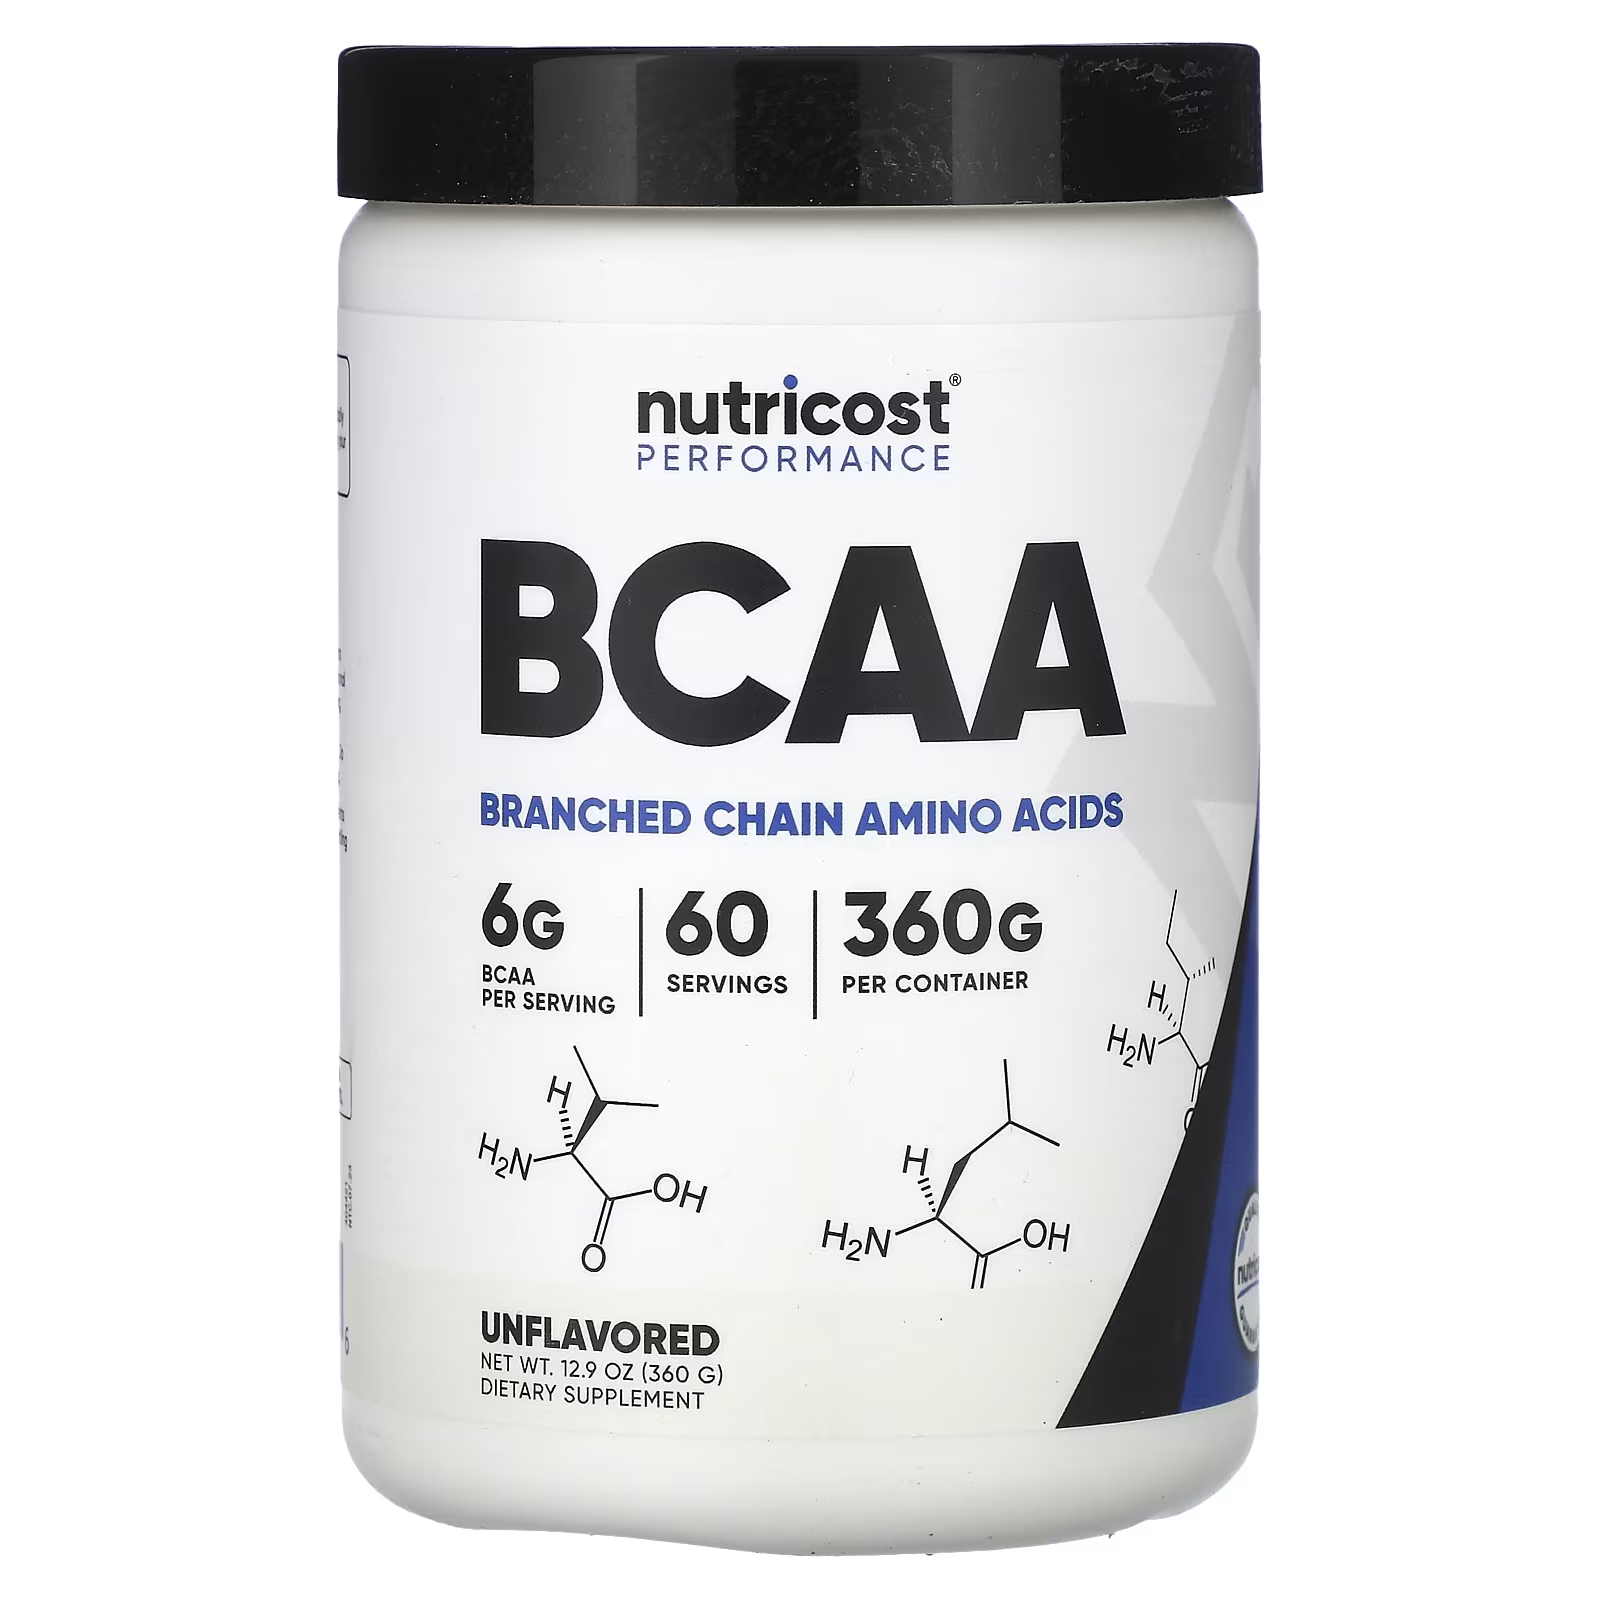 Пищевая добавка Nutricost Performance BCAA, 360 г пищевая добавка musclesport bcaa revolution клубничный лимонад 450 г